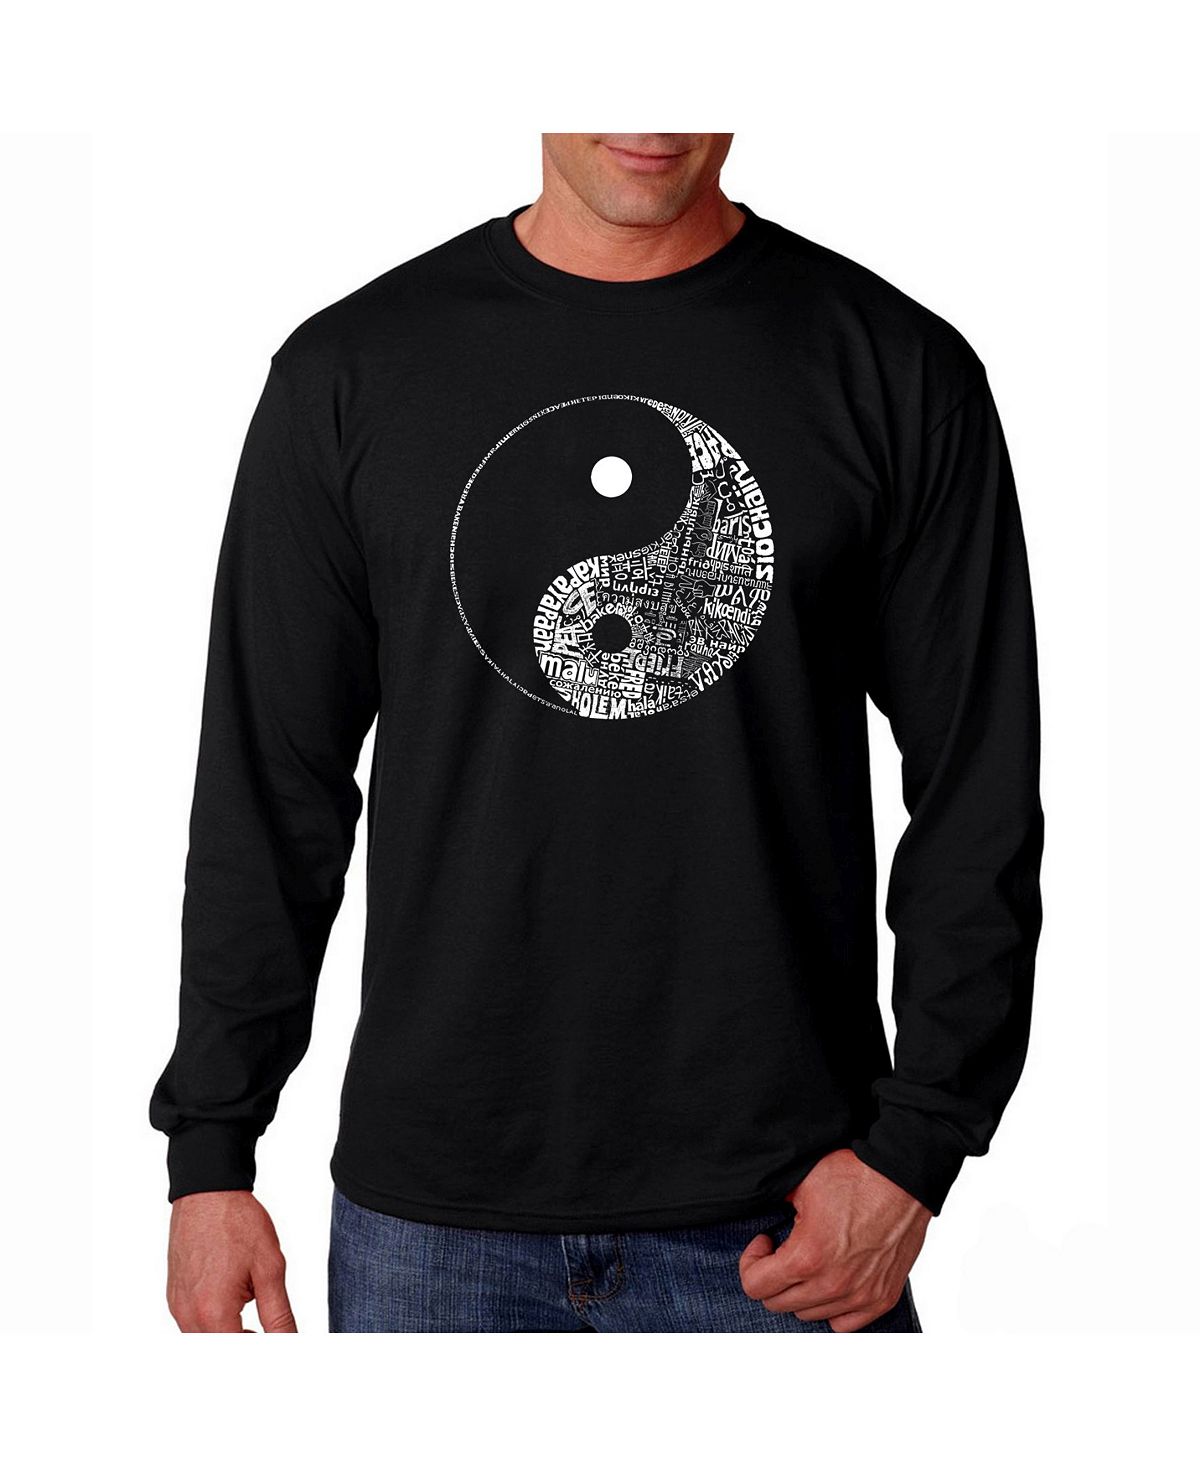 Мужская футболка с длинным рукавом word art - yin yang LA Pop Art, черный